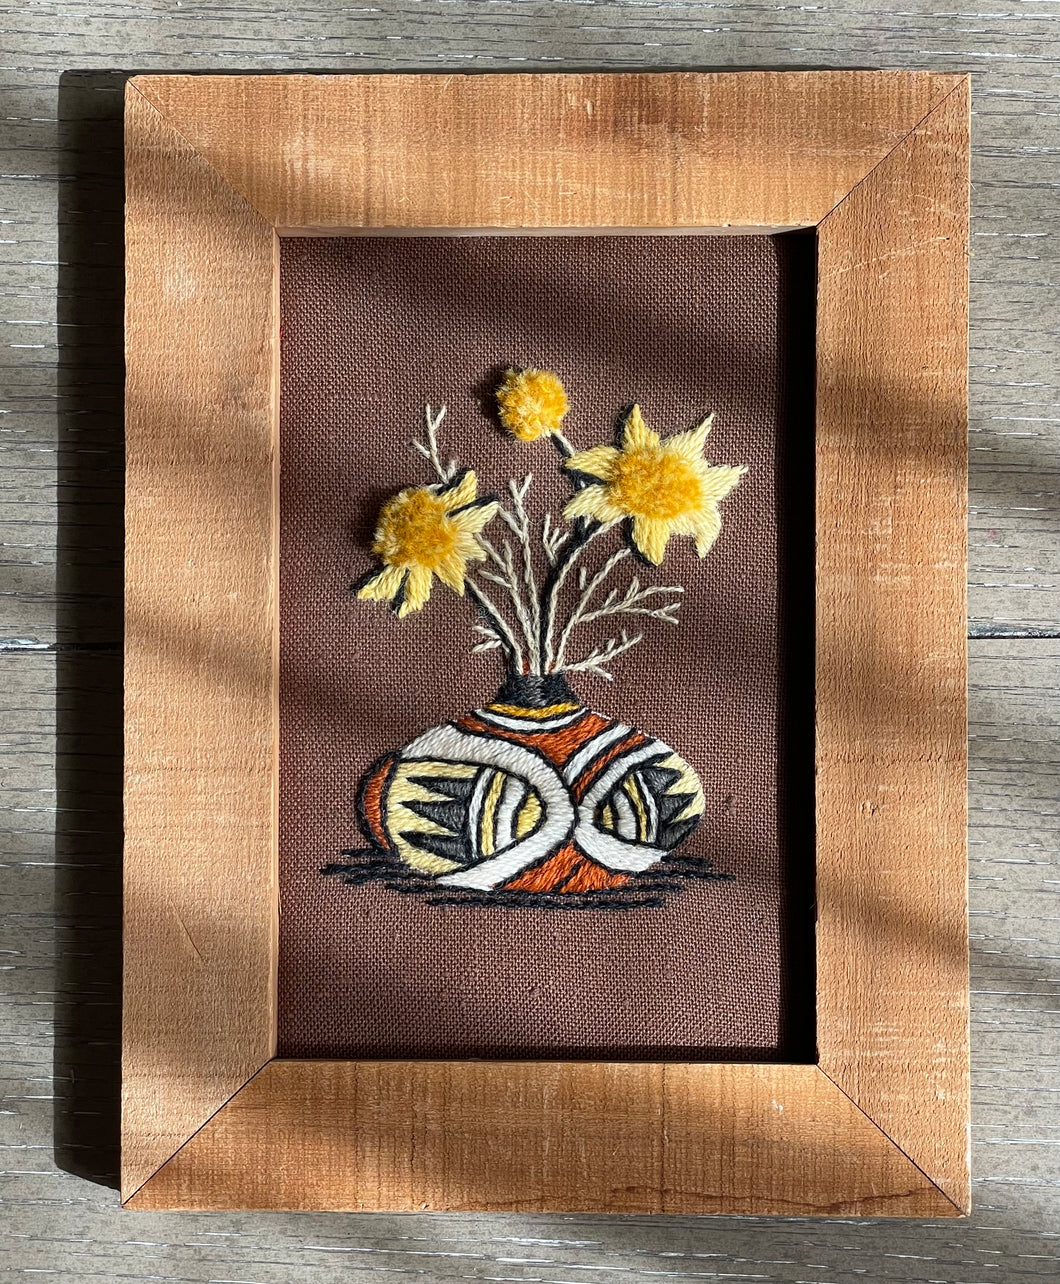 Southwestern Vase Embroidery